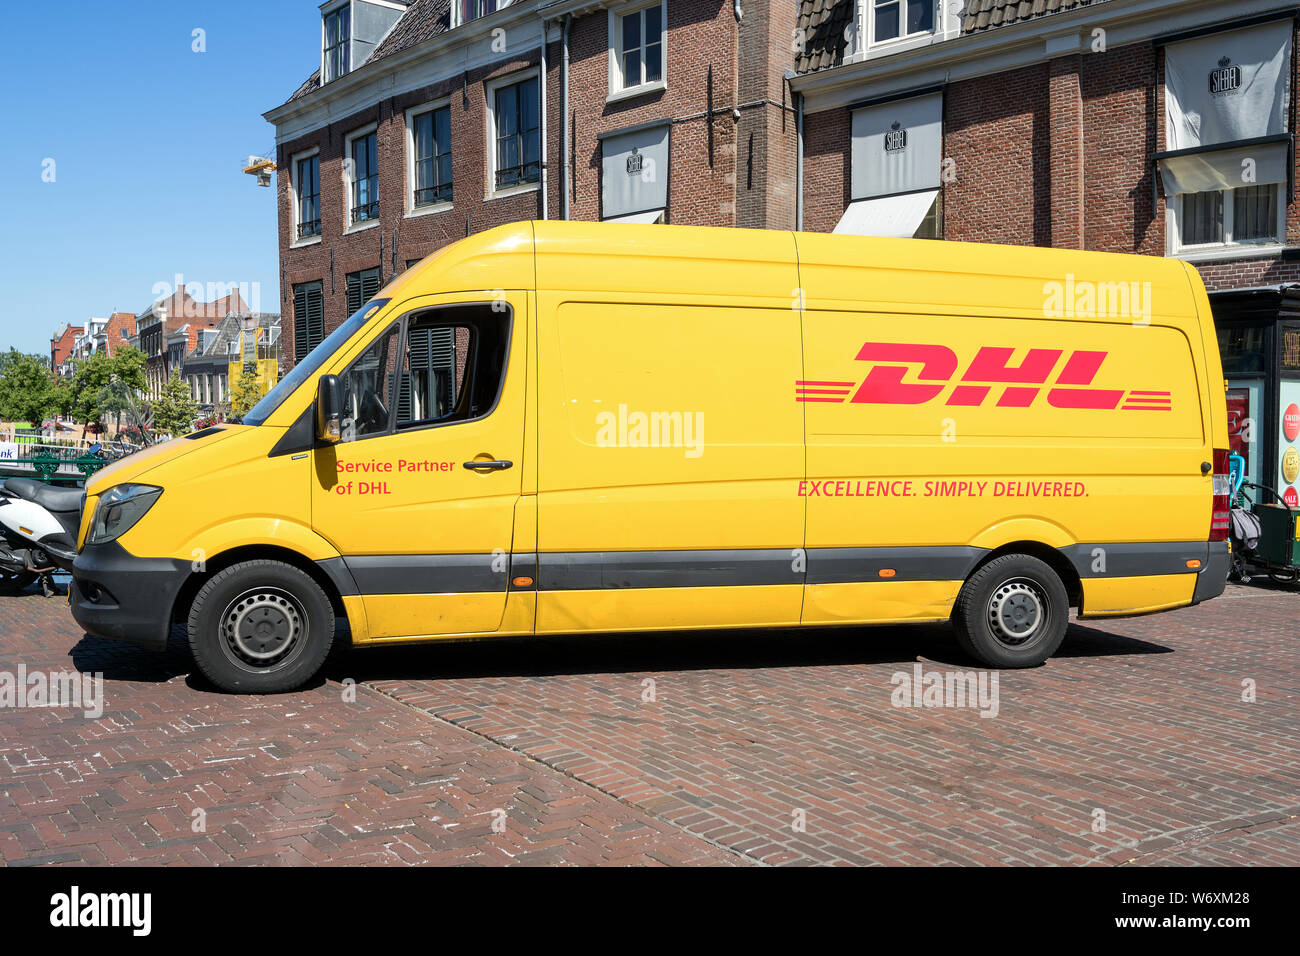 Livraison DHL van. DHL est une division de la société de logistique allemand Deutsche Post AG international offrant des services de courrier express. Banque D'Images